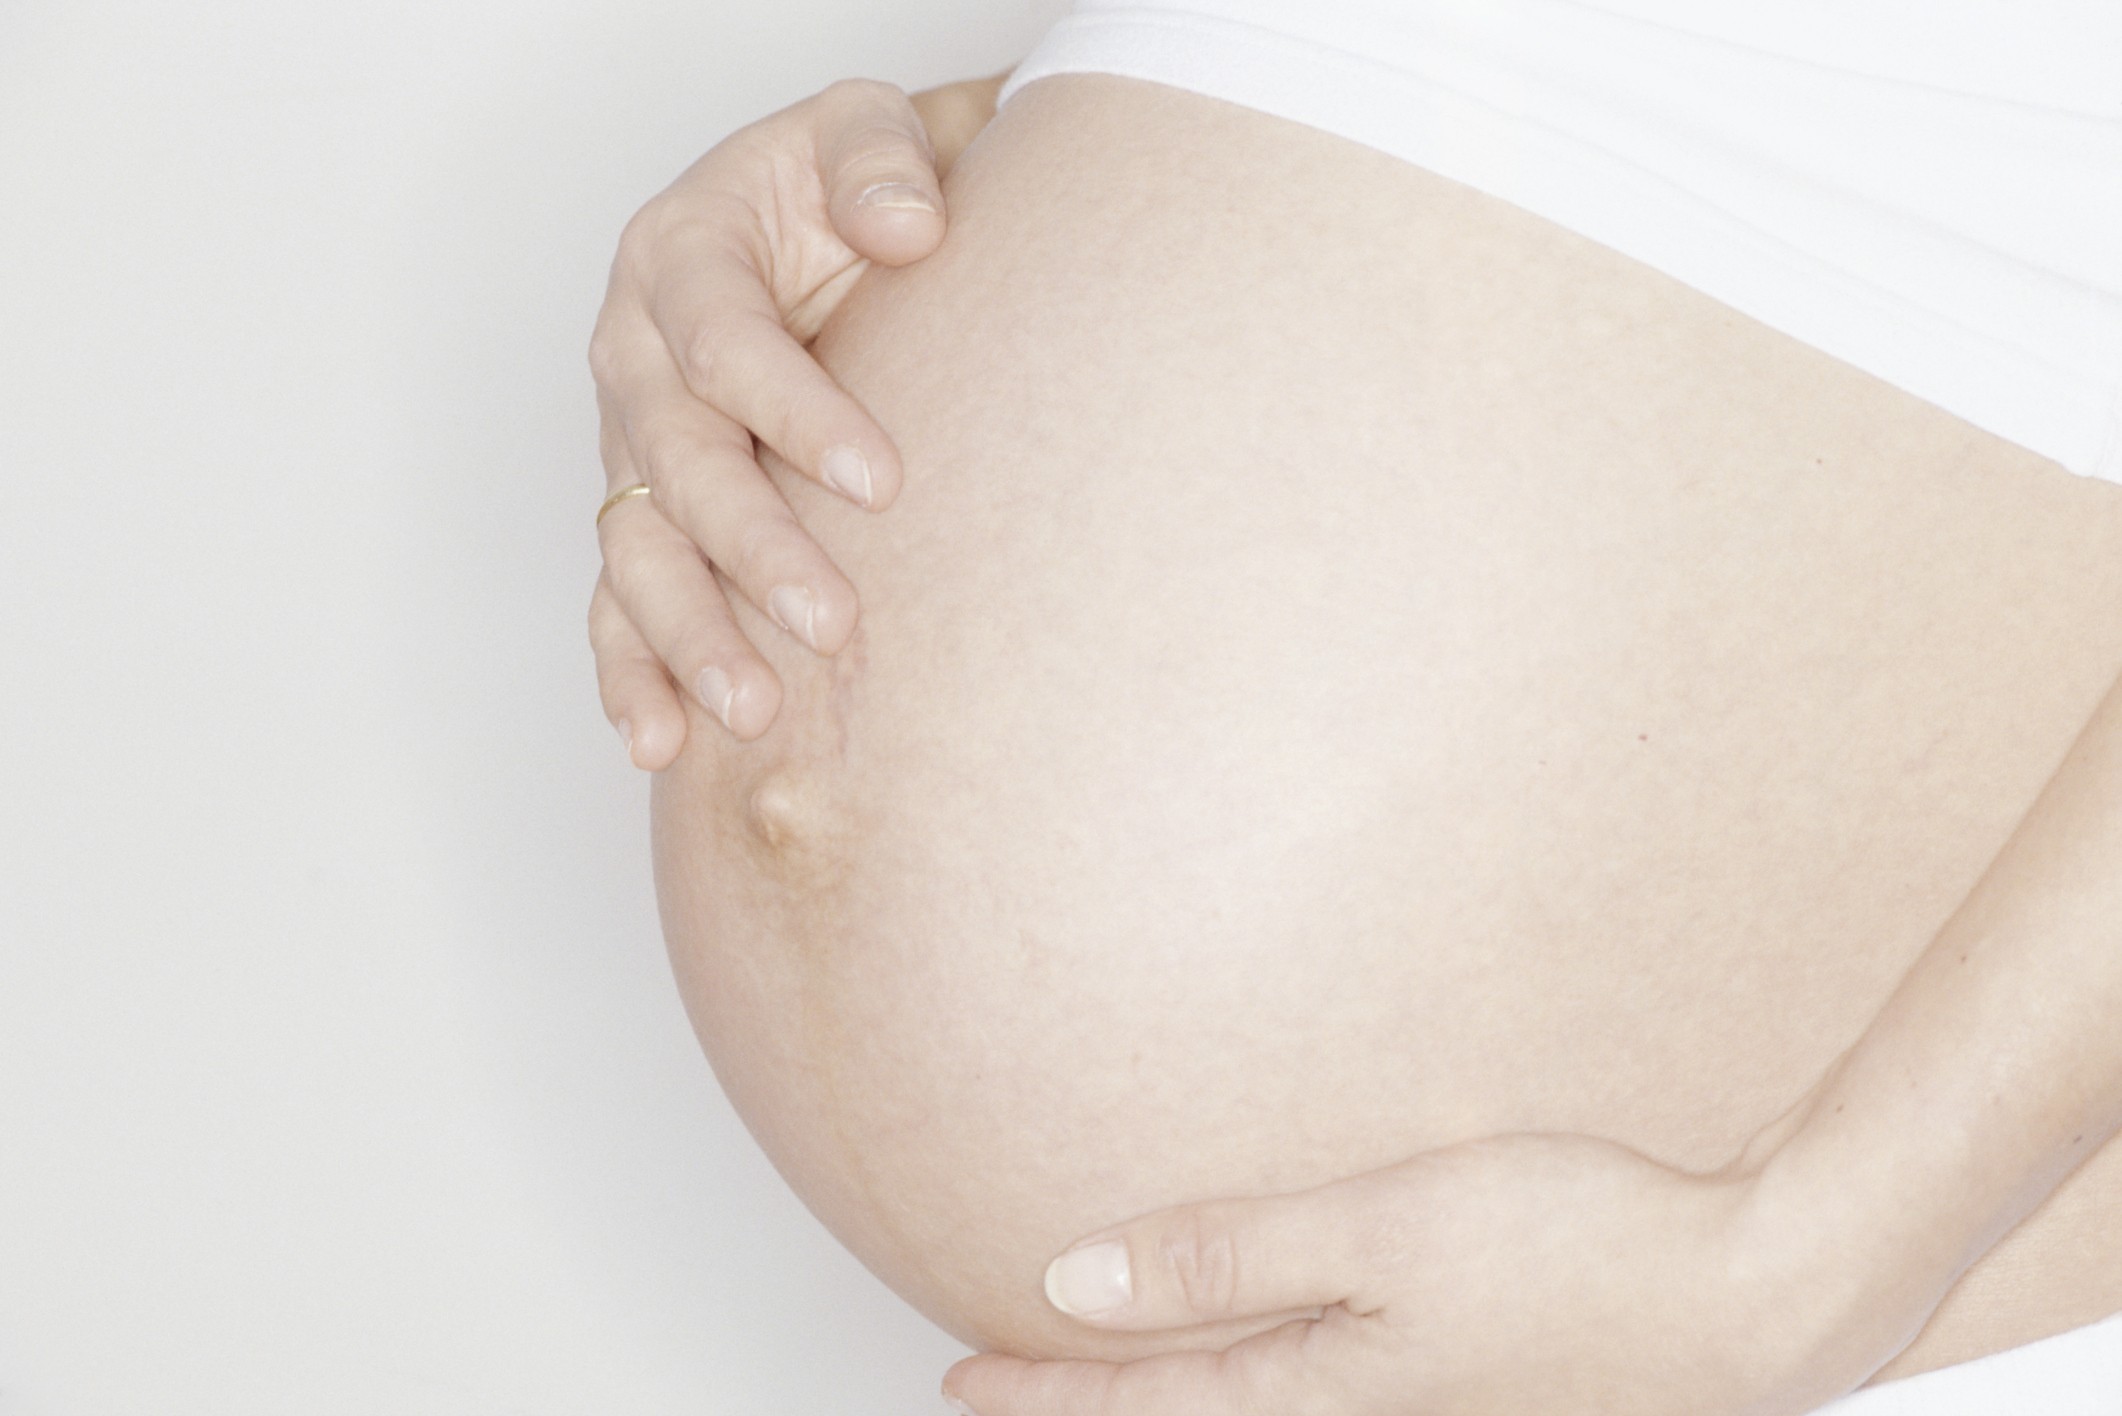 Siglas: uma dos muitos aprendizados que a gravidez proporciona (Foto: Thinkstock)